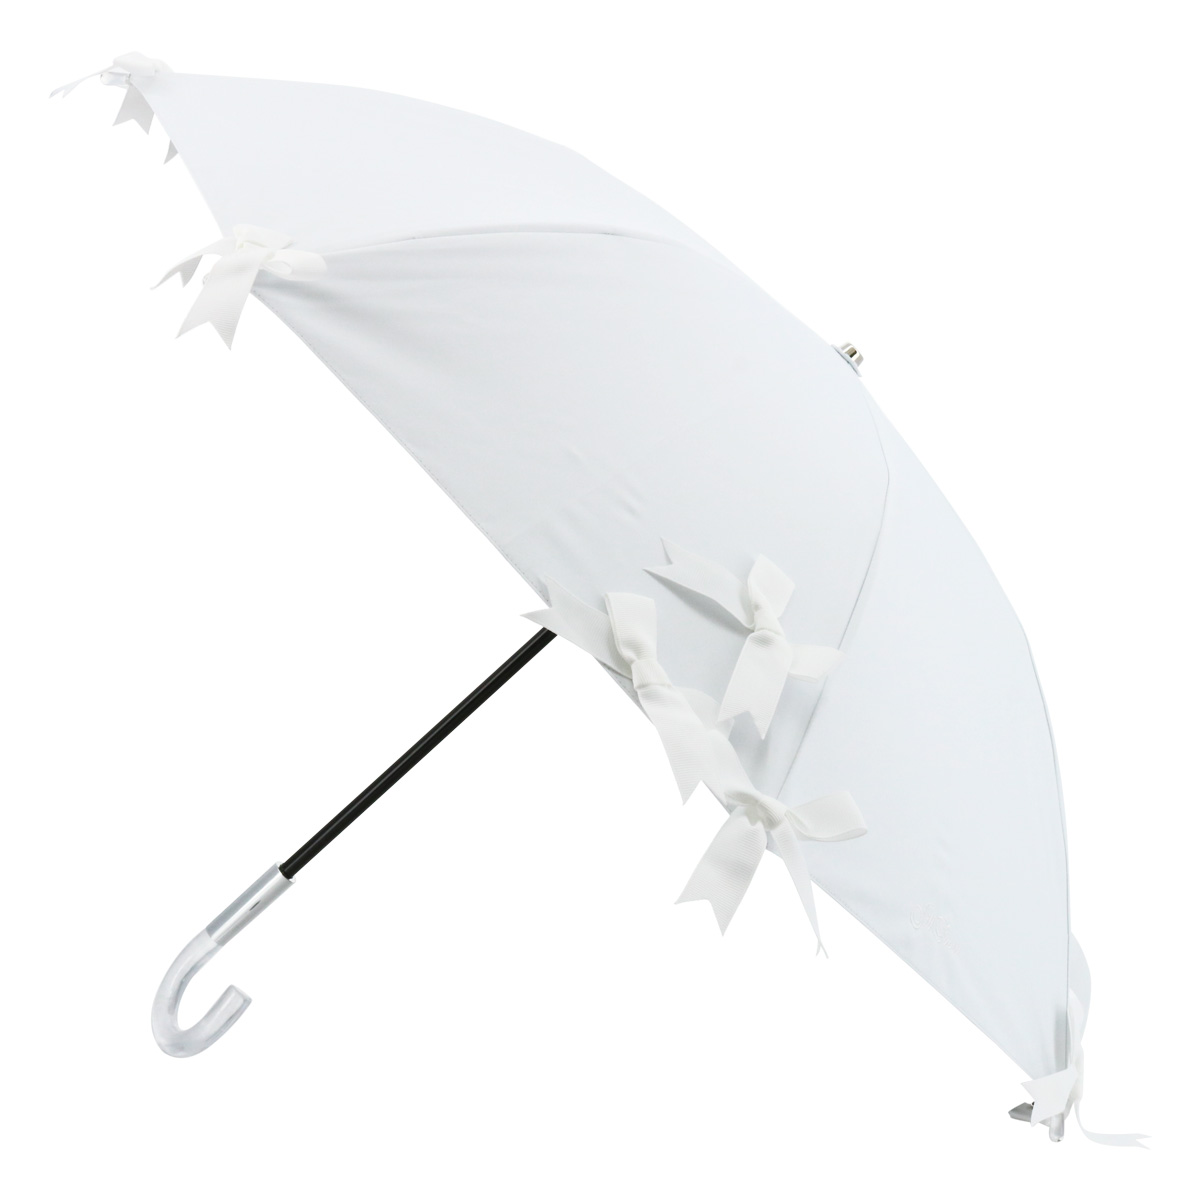 ジルスチュアート 傘 Sサイズ ショート 晴雨兼用傘 1JI 21045-45 JILLSTUART ギフト プレゼント 日傘 雨傘 UVカット 遮光  遮熱